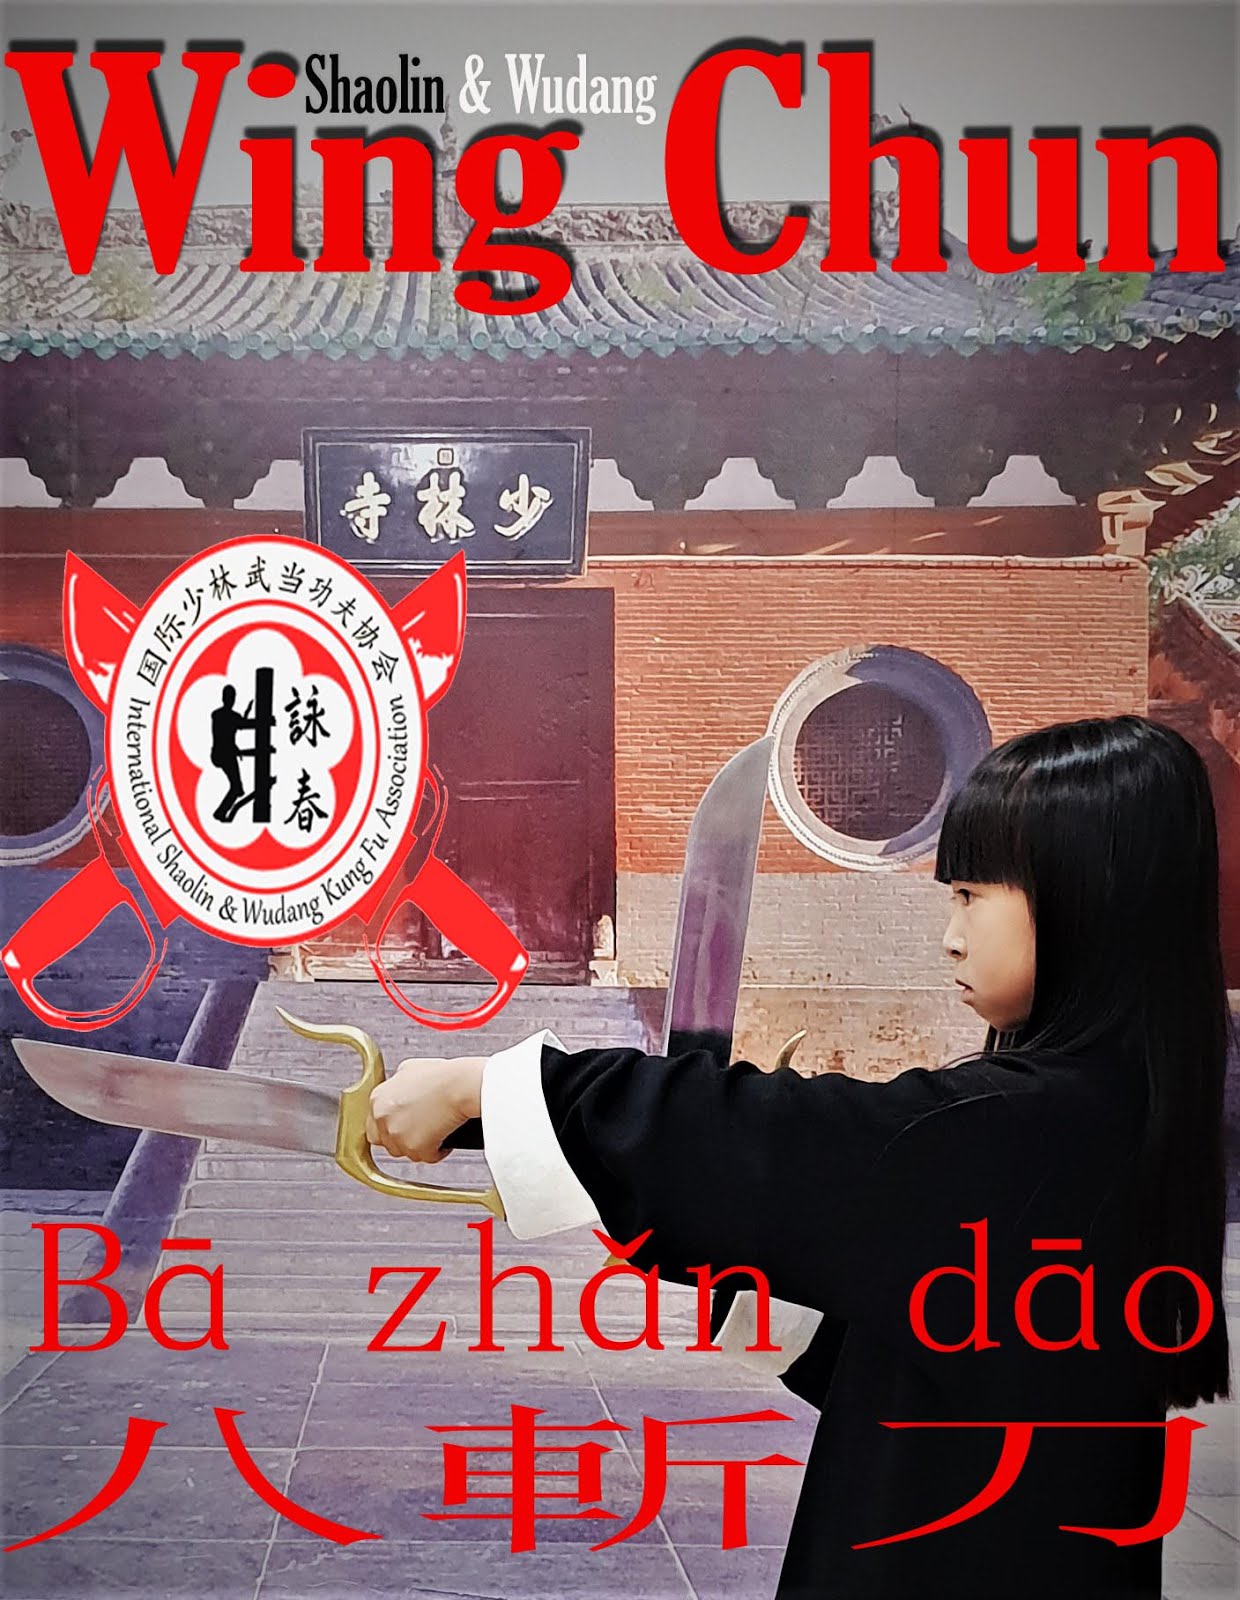 Clases y Cursos de Kung Fu Infantil, Niñas y Niños - Azuqueca de henares